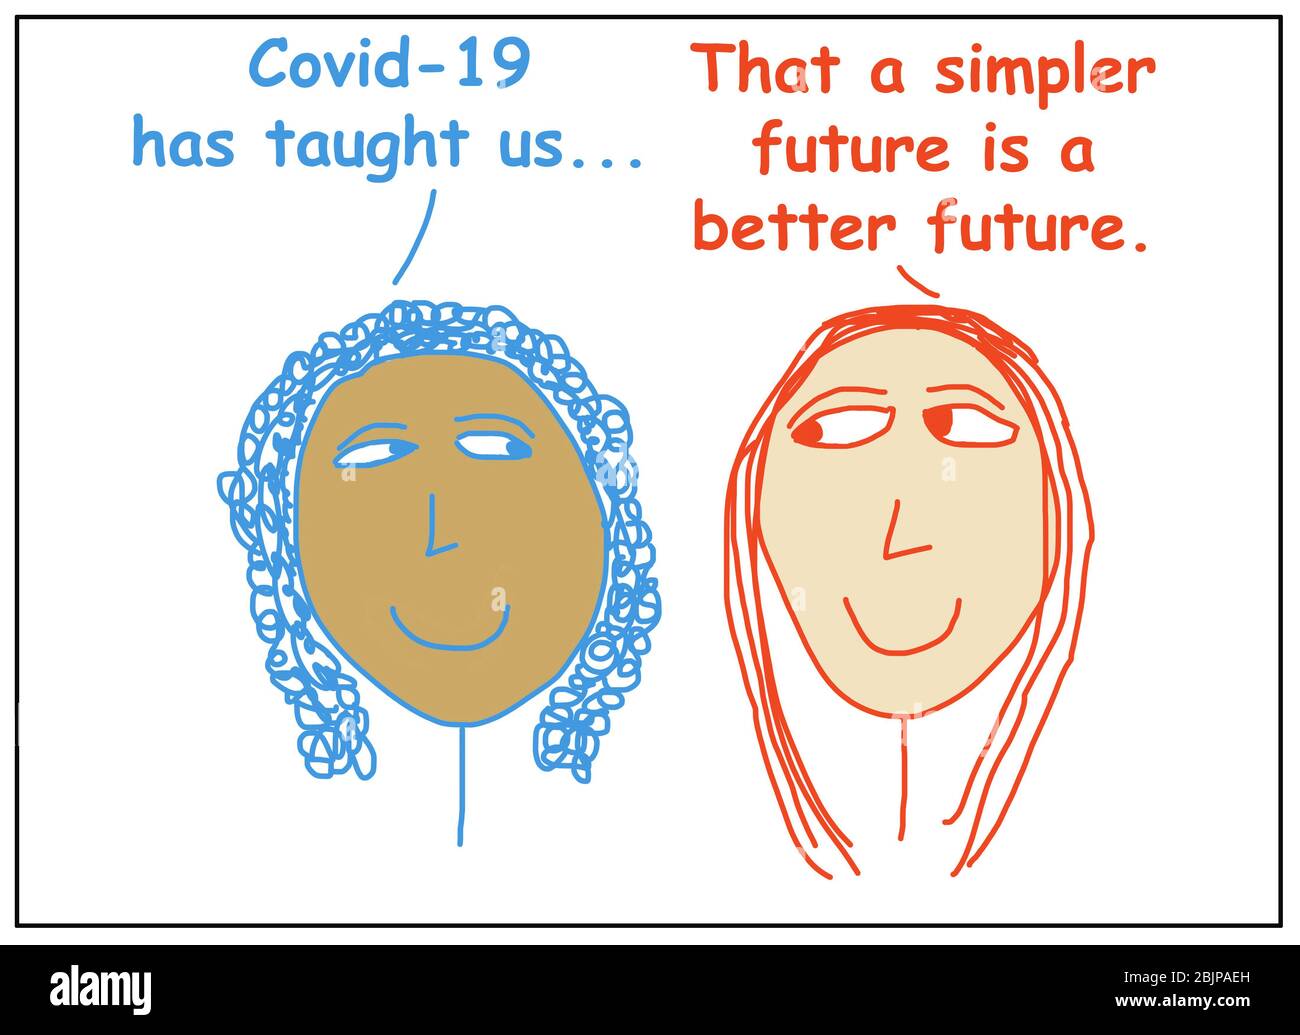 Farbzeichentrick zweier ethnisch unterschiedlicher Frauen, die sagen, dass Covid 19 uns gelehrt hat, dass eine einfachere Zukunft eine bessere Zukunft ist. Stockfoto